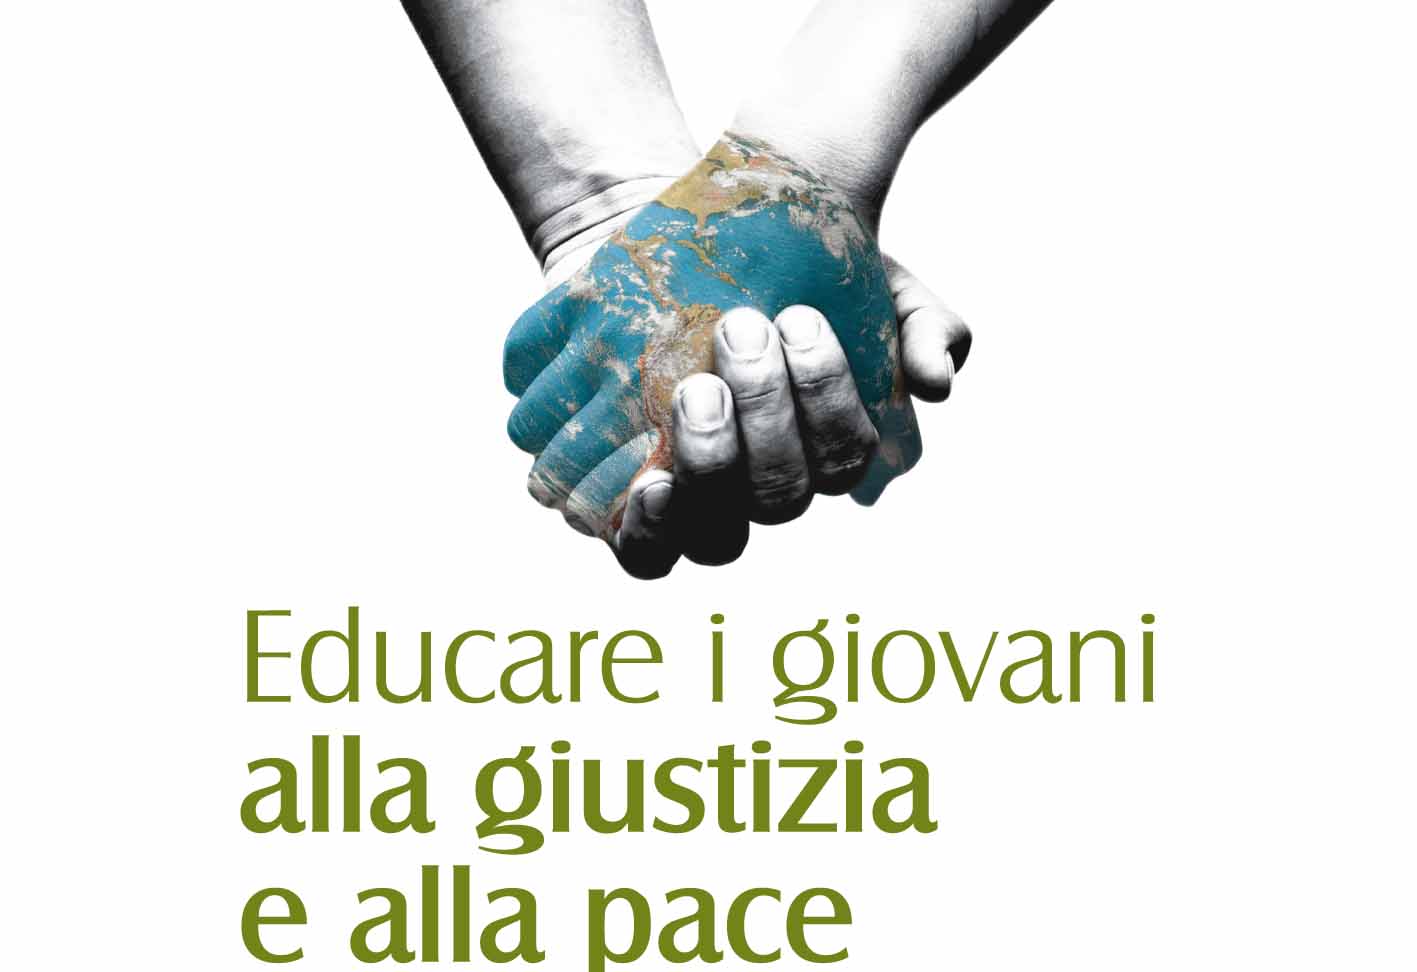 3 maggio a Piacenza, Educare i giovani alla giustizia e alla pace